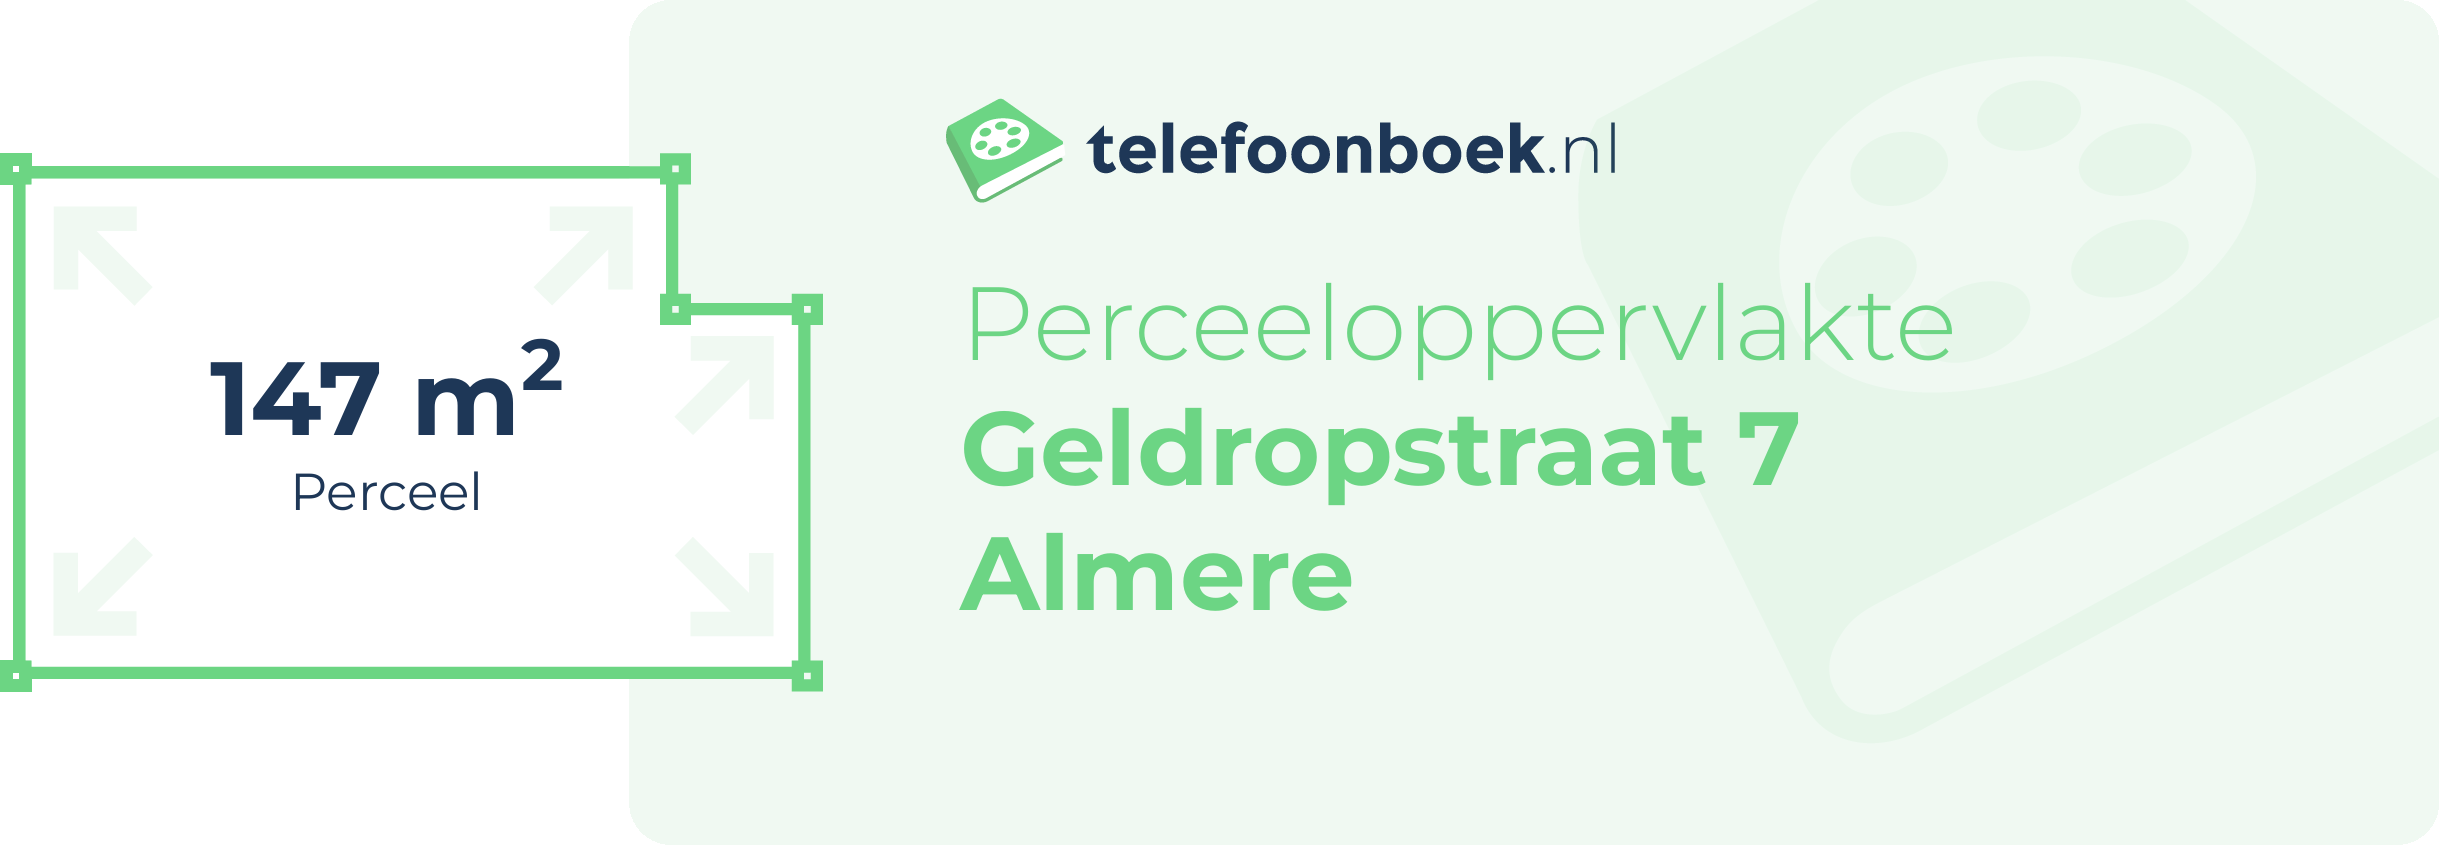 Perceeloppervlakte Geldropstraat 7 Almere